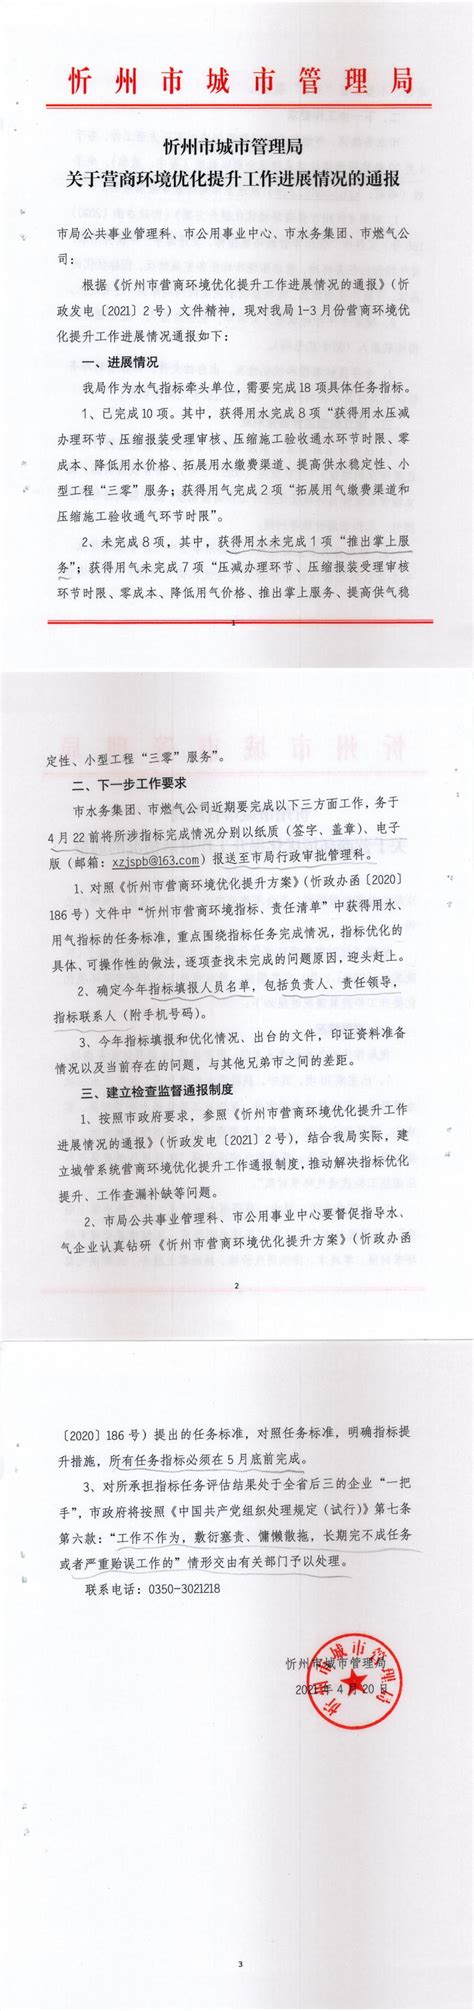 忻州市城市管理局关于营商环境优化提升工作进展情况的通报 - 营商之窗 - 忻州市水务（集团）有限责任公司